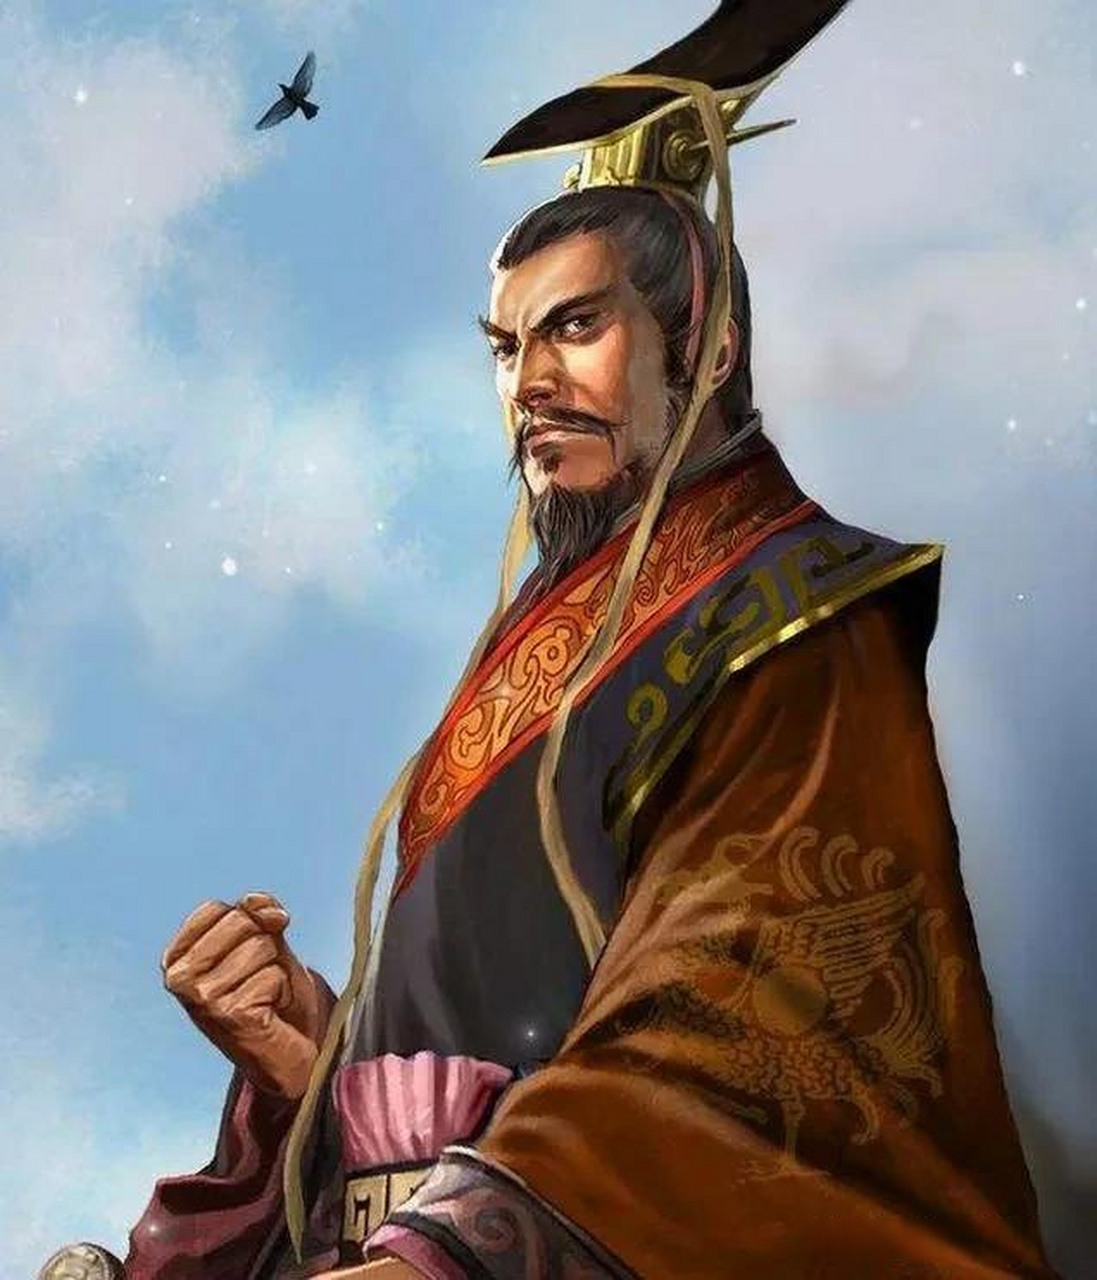 齐桓公称霸时,江汉流域的楚国独霸一方